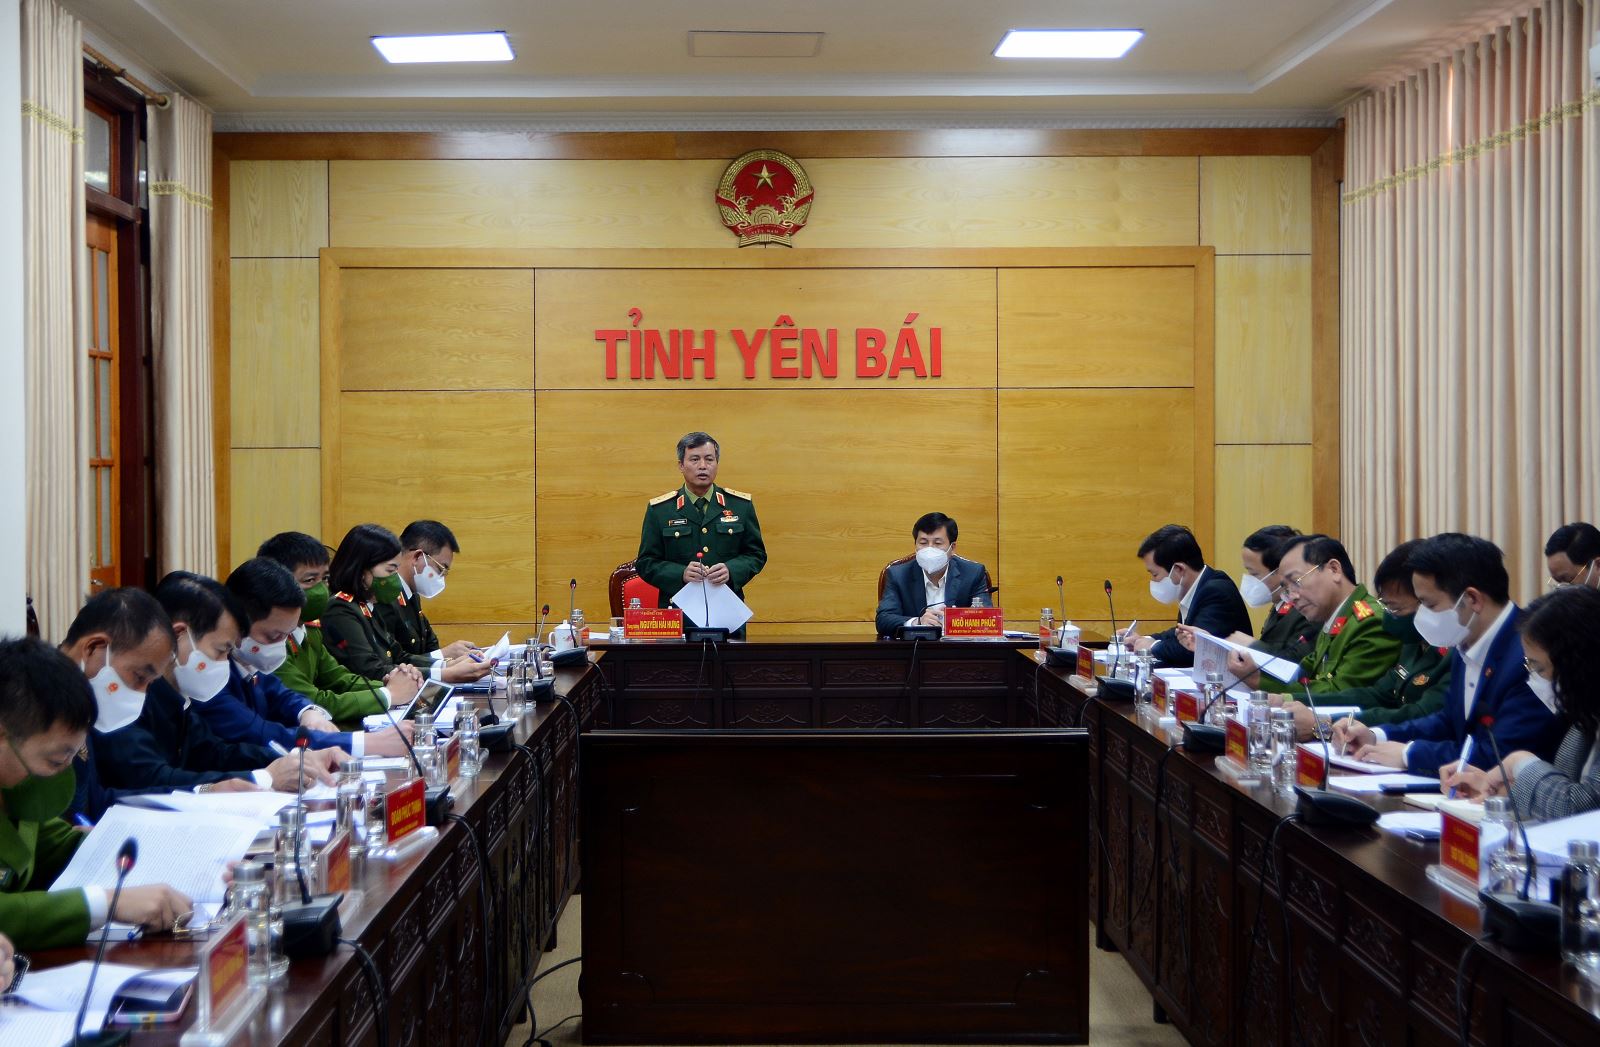 Phó Chủ nhiệm Uỷ ban Quốc phòng và An ninh, Trung tướng Nguyễn Hải Hưng phát biểu tại buổi làm việc